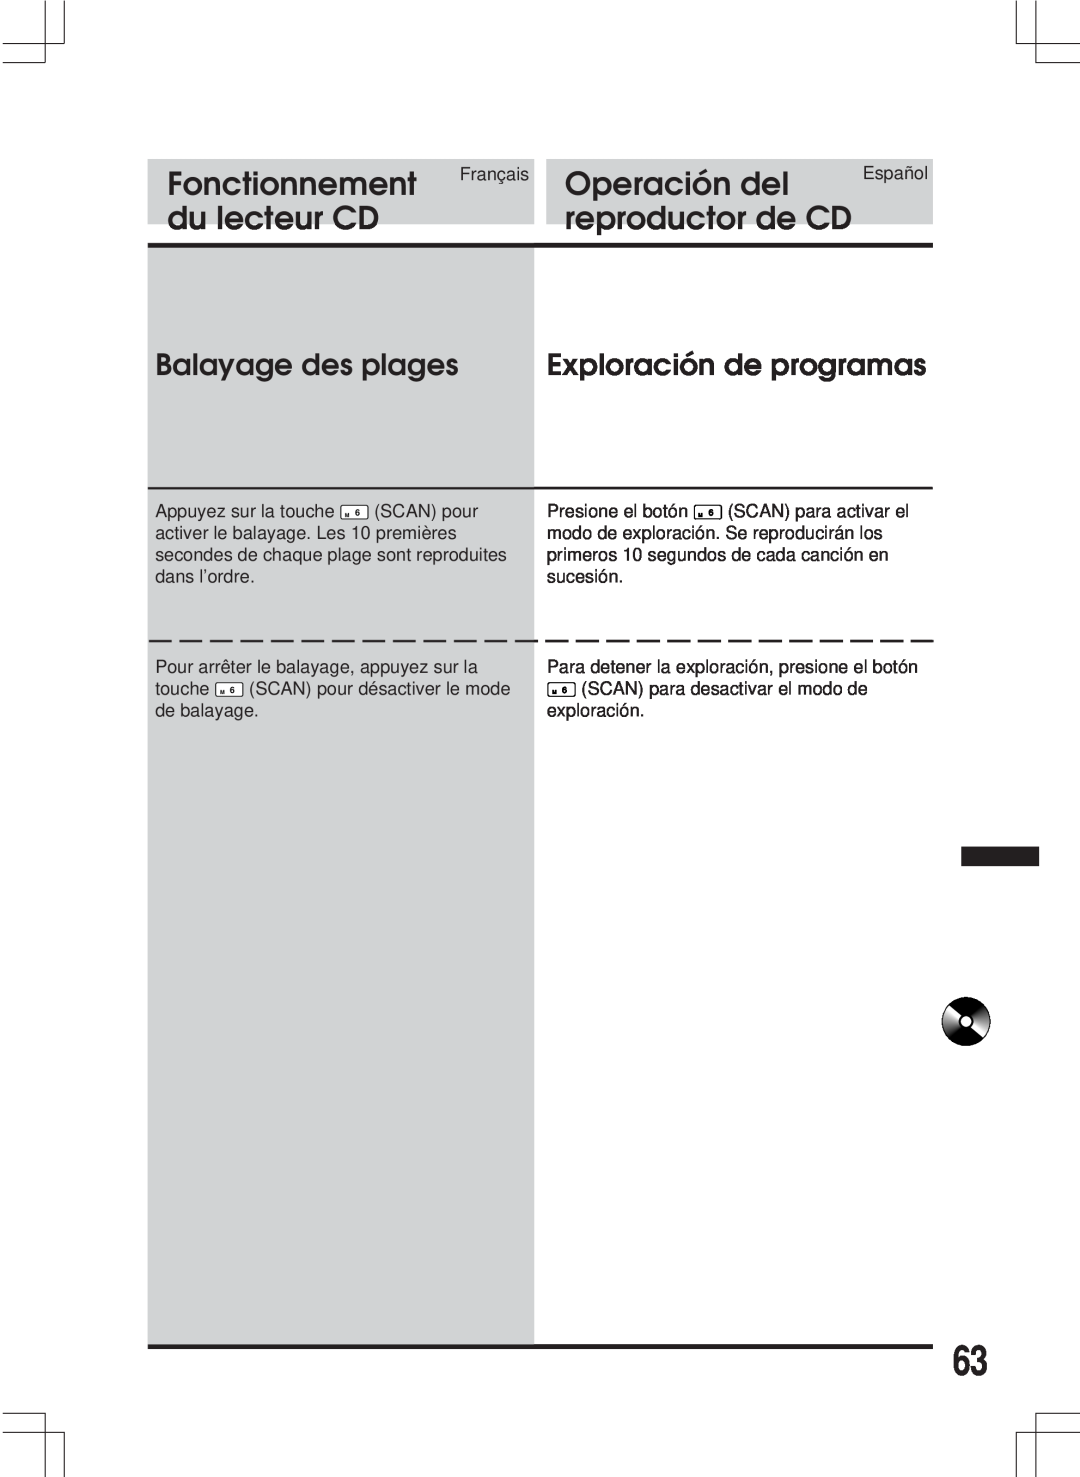 Alpine MDA-W890 owner manual Balayage des plages, Exploración de programas, Fonctionnement, Operación del, du lecteur CD 